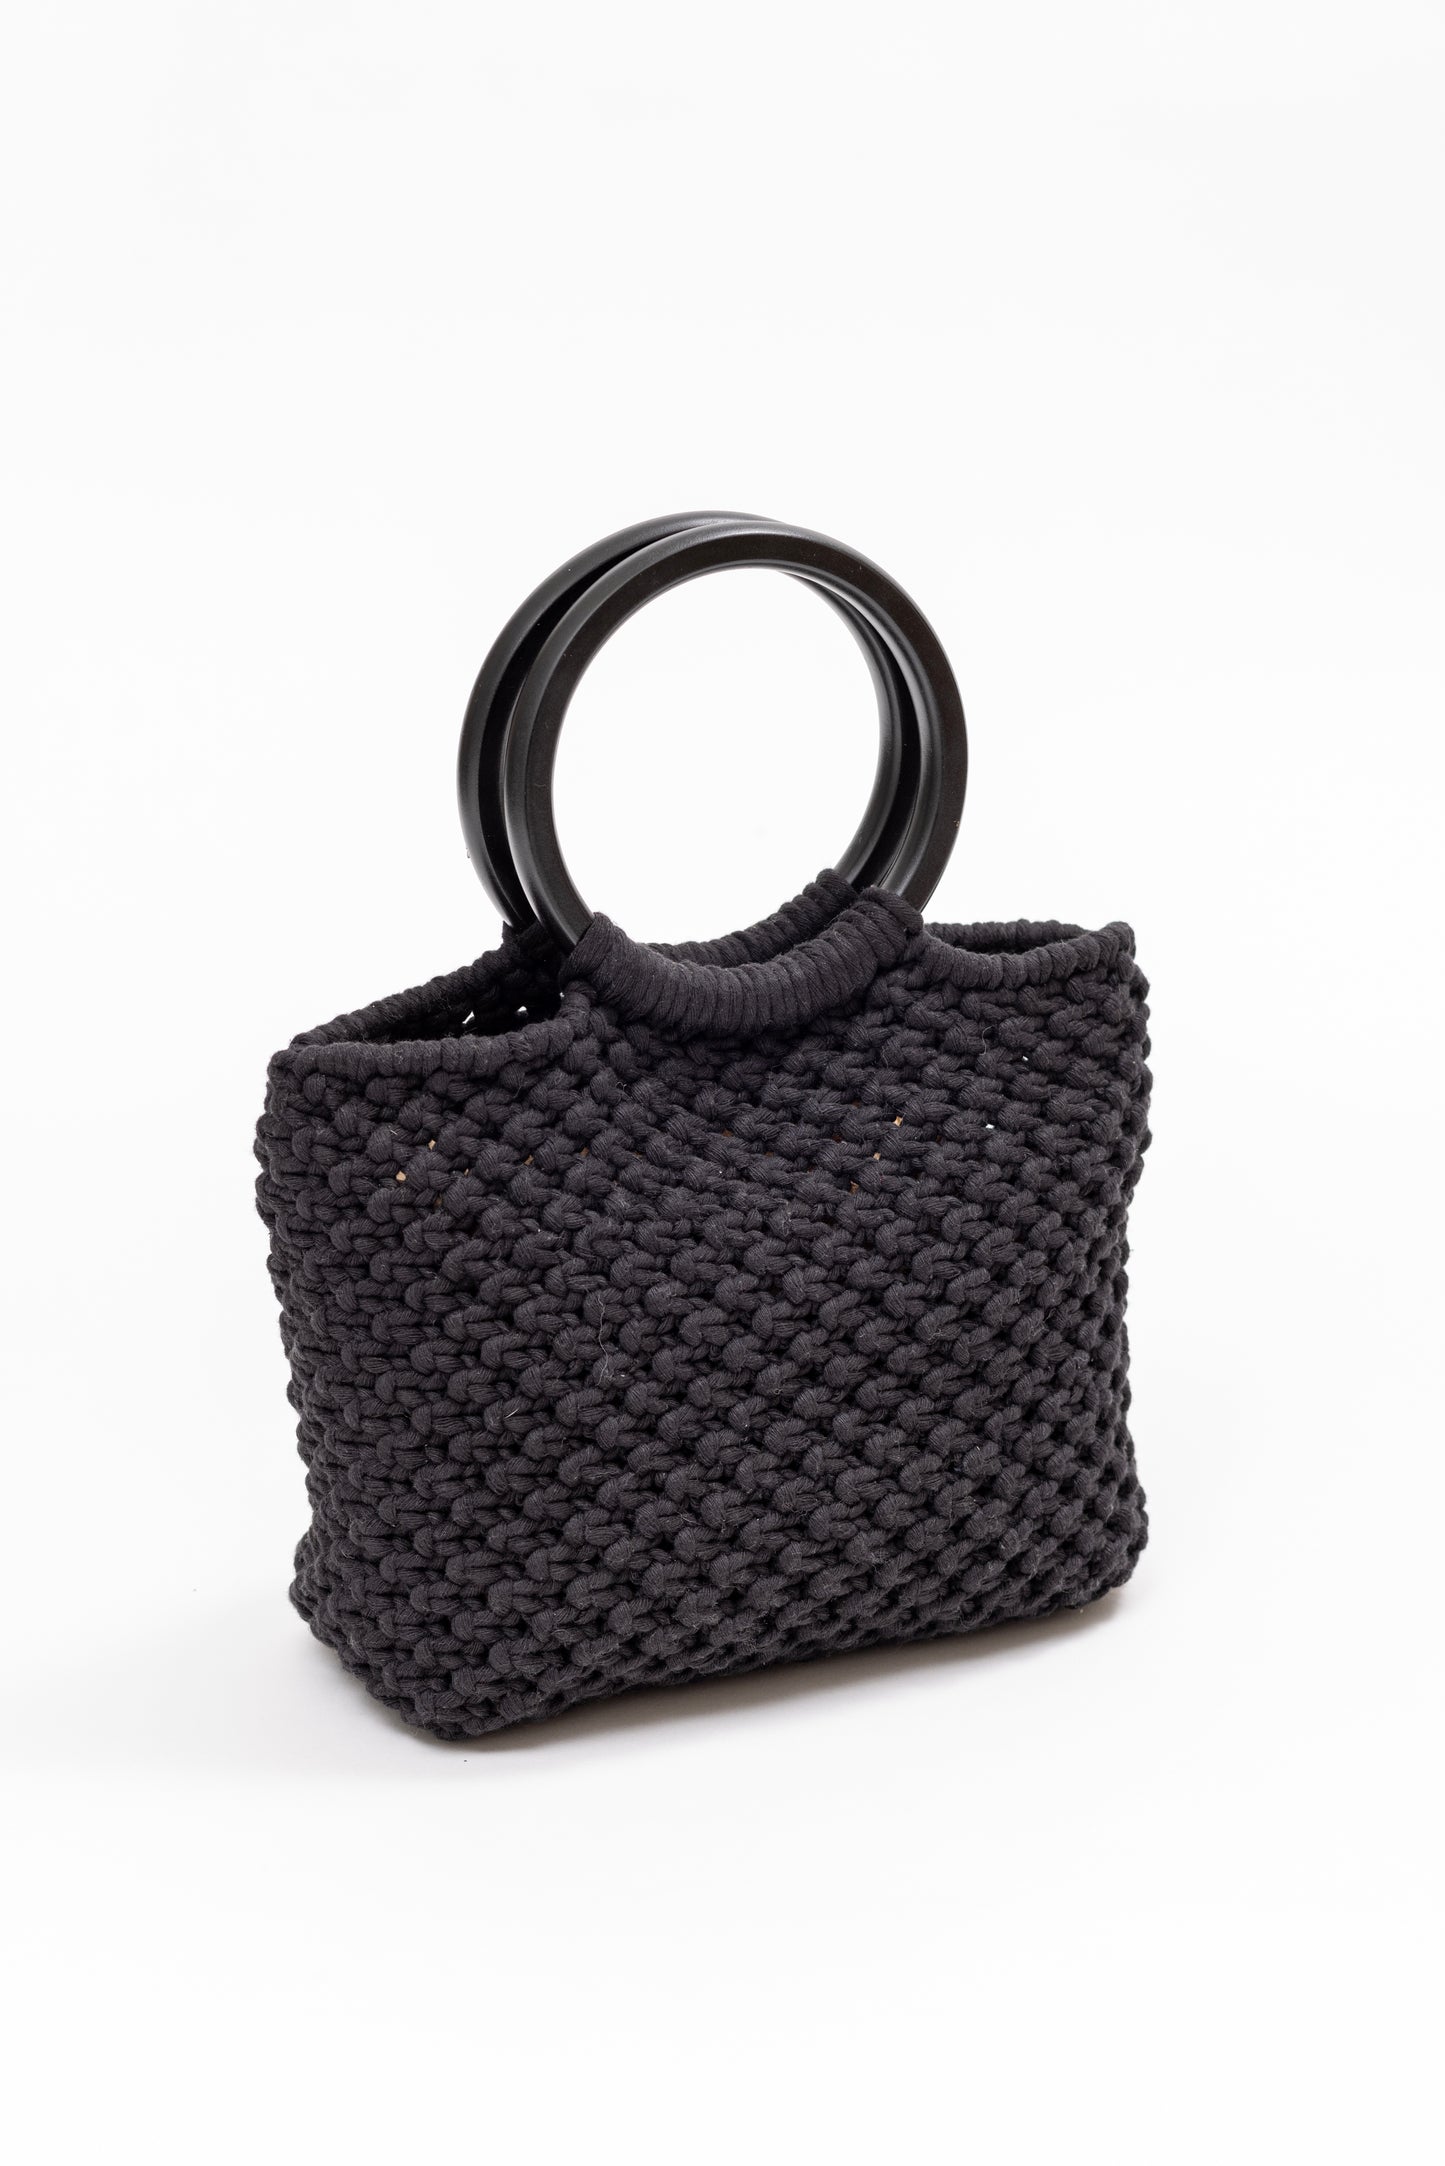 Black macrame tote bag with black handles